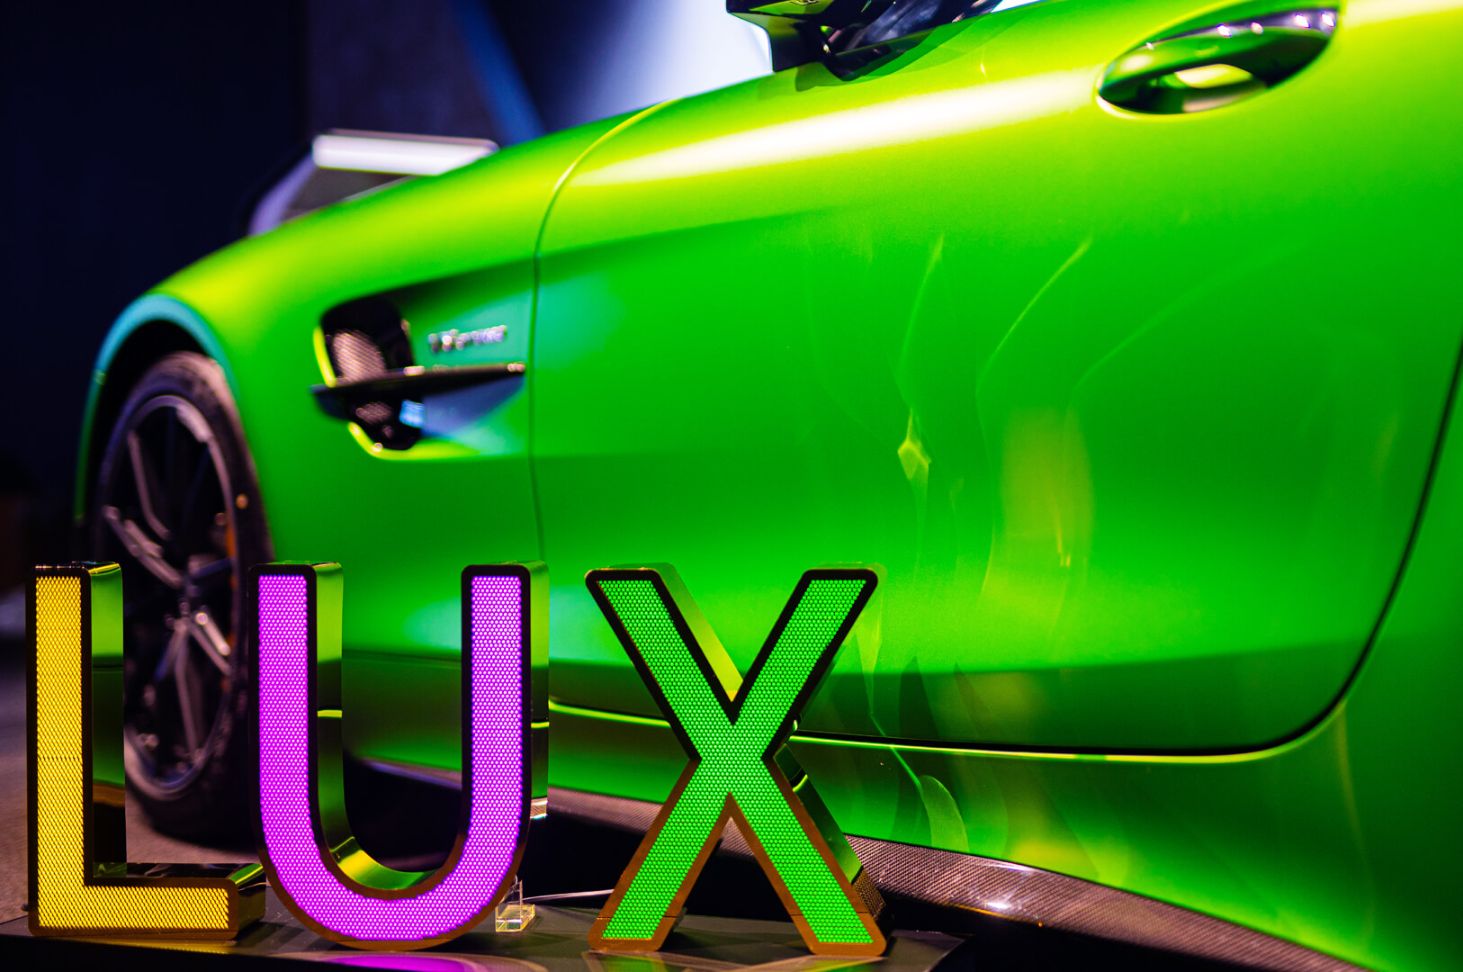 Lettres LUX en acier inoxydable perforé brillant, rétroéclairées par LED, dans le showroom Mercedes